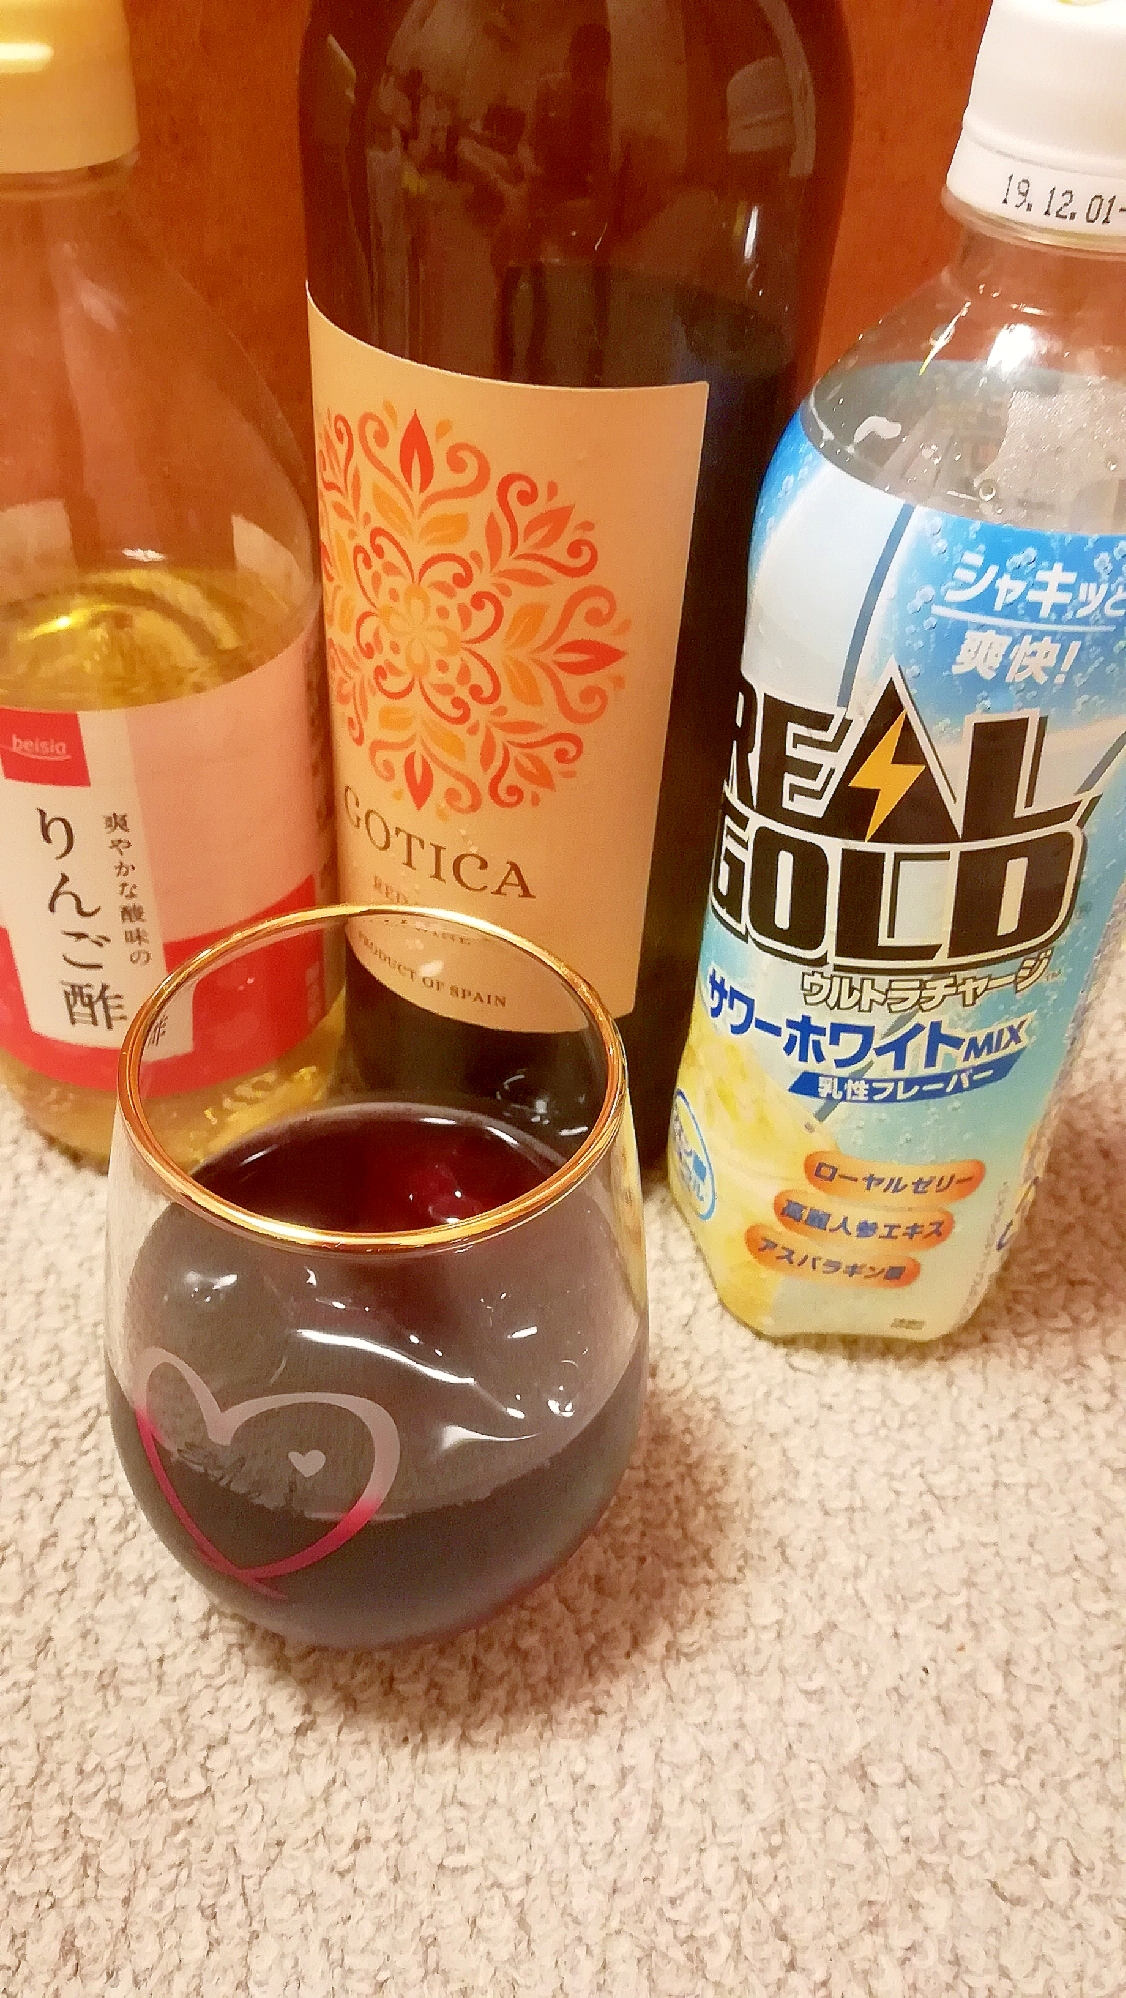 リアルゴールドと赤ワインとりんご酢のお酒